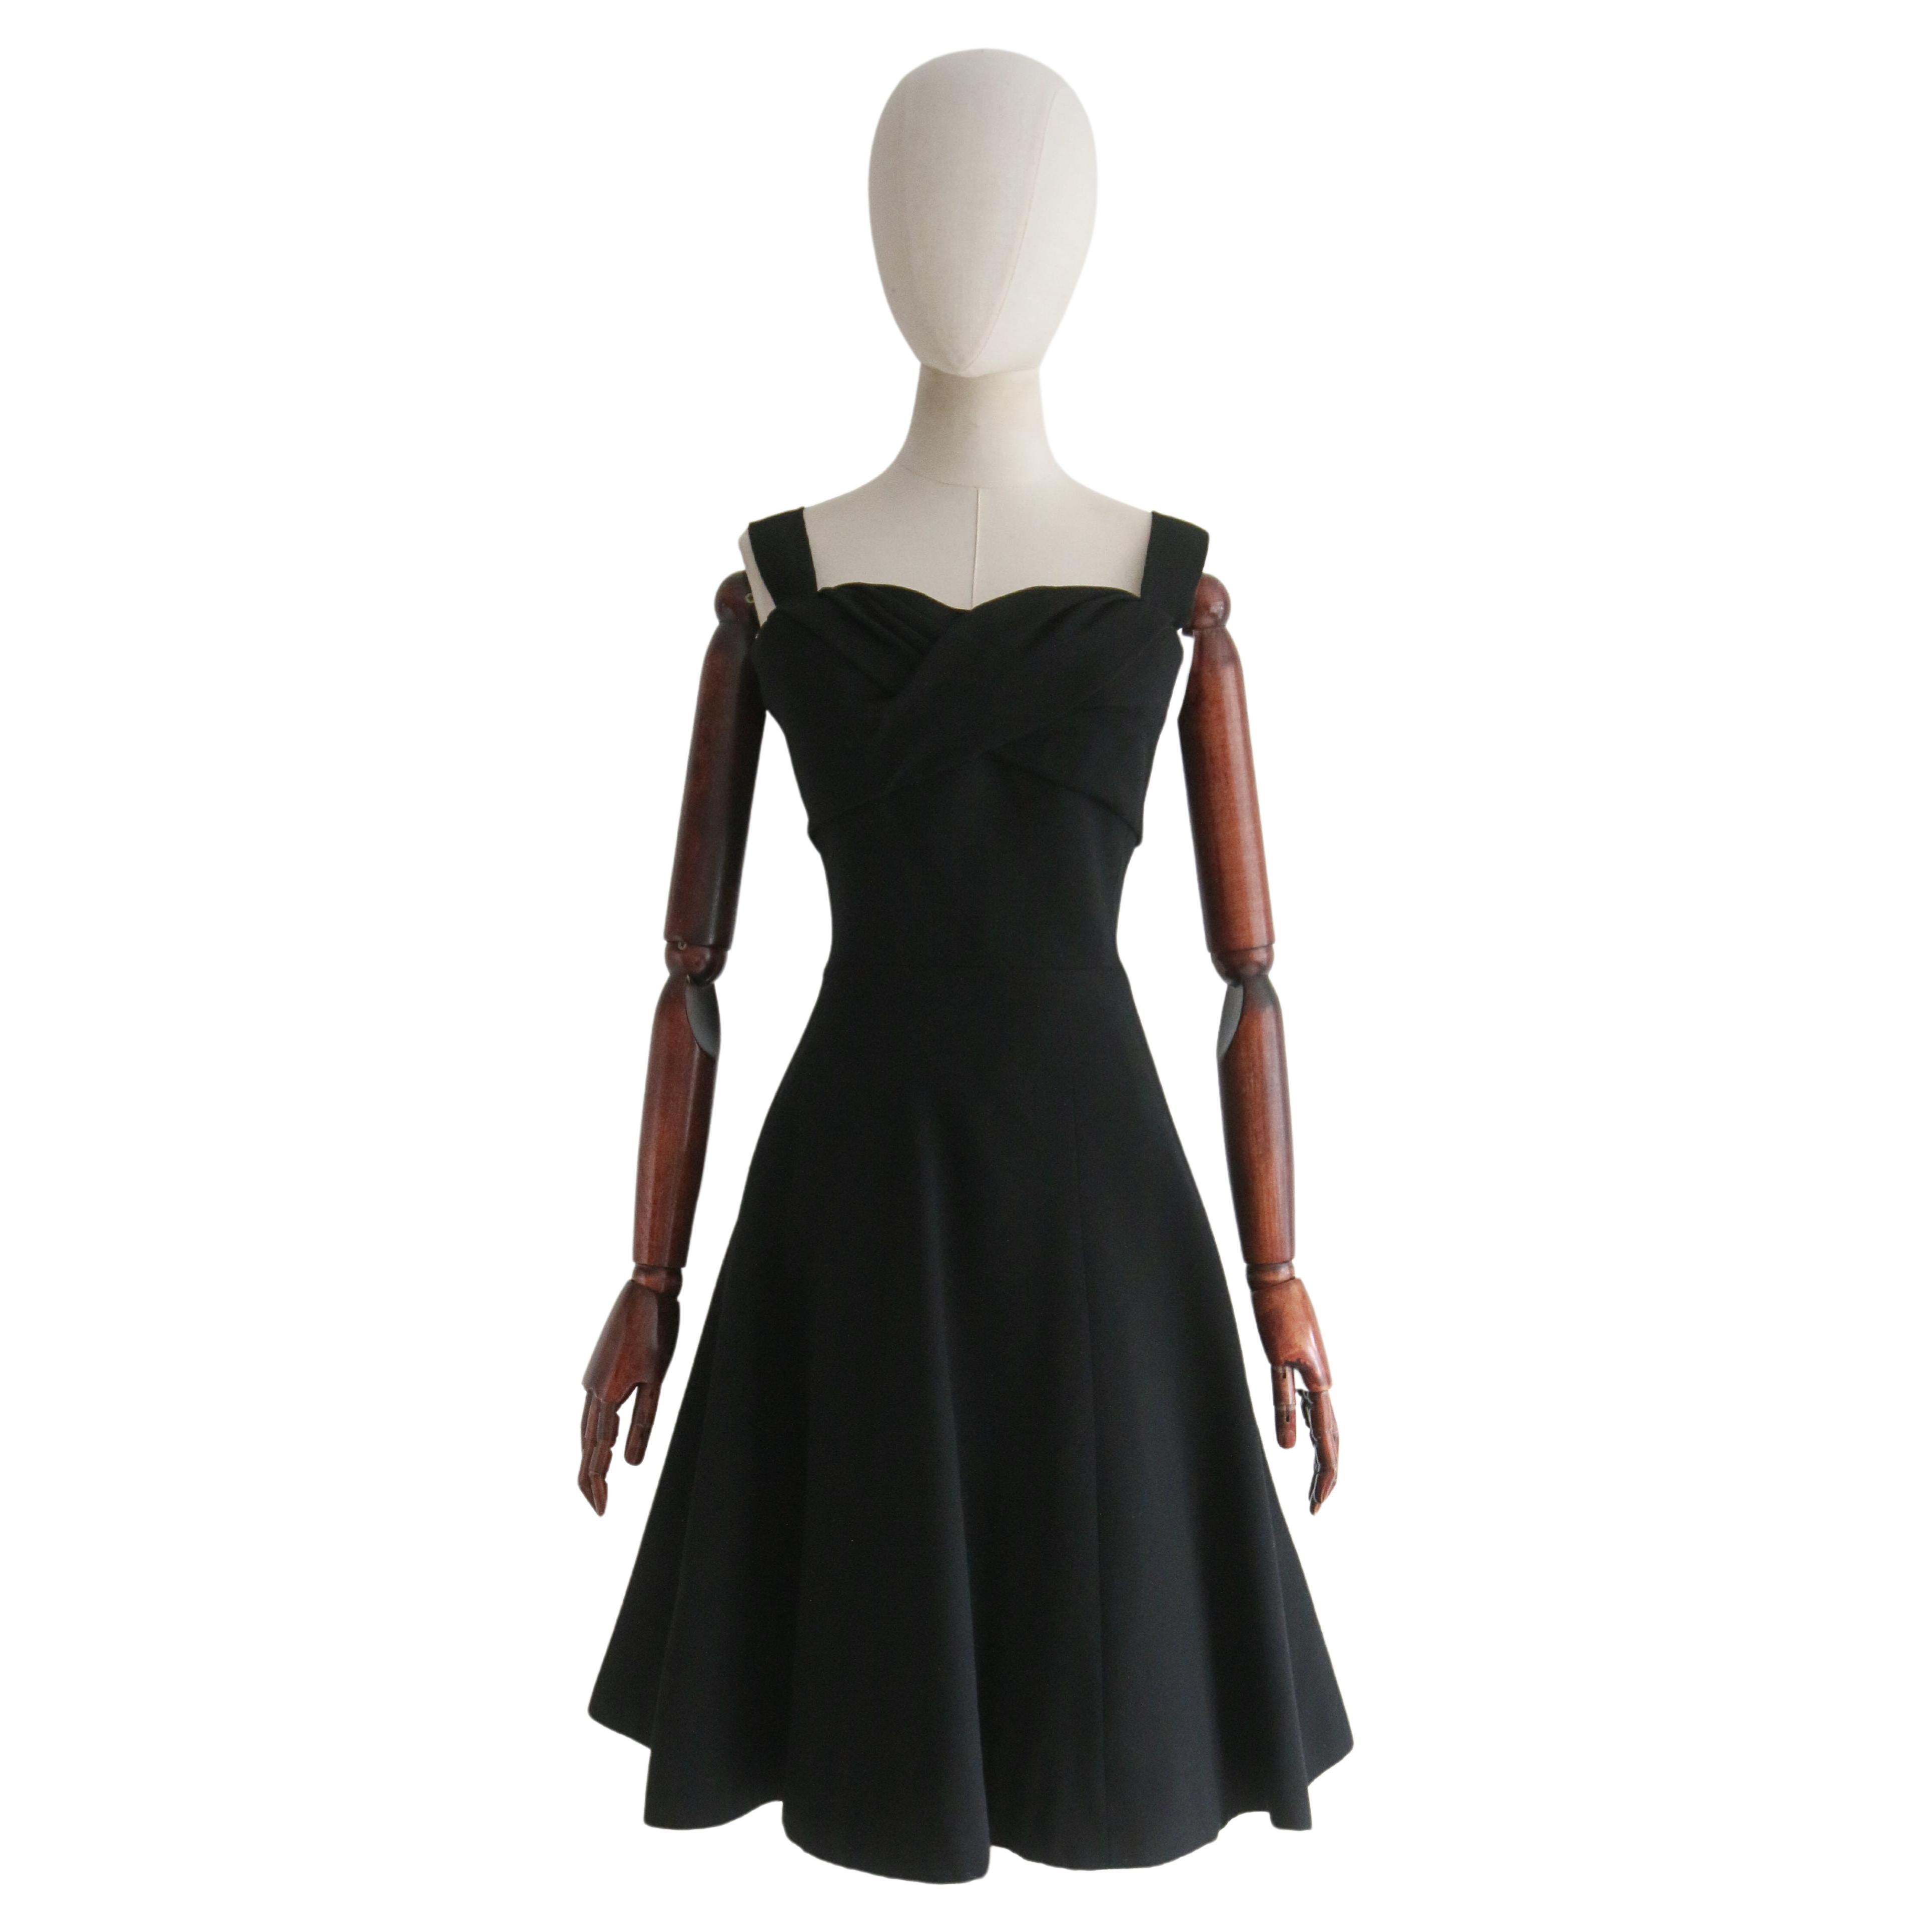  Vintage Late 1950's Black Christian Dior Dress UK 8 US 4 en vente